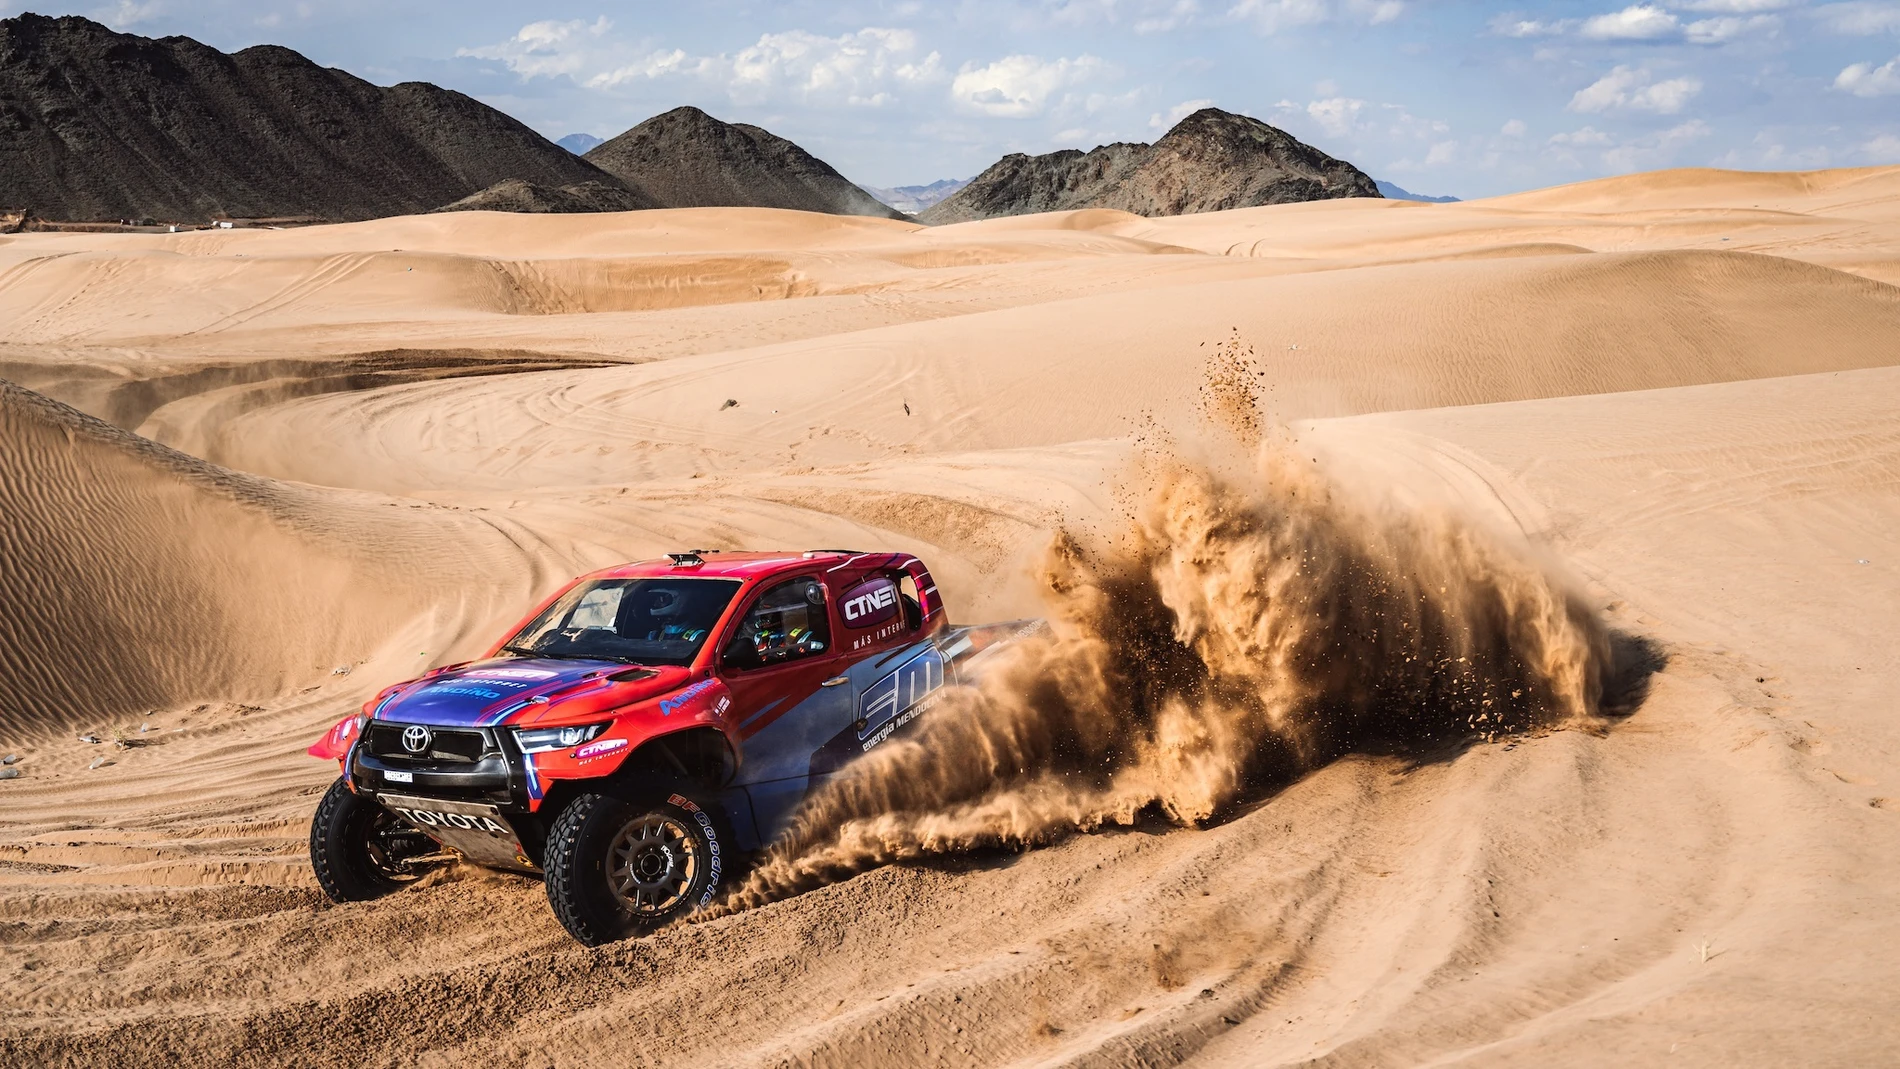 Rally Dakar 2022: Recorrido de la etapa 1 hoy, sábado 1 de enero, entre Jeddah y Hail